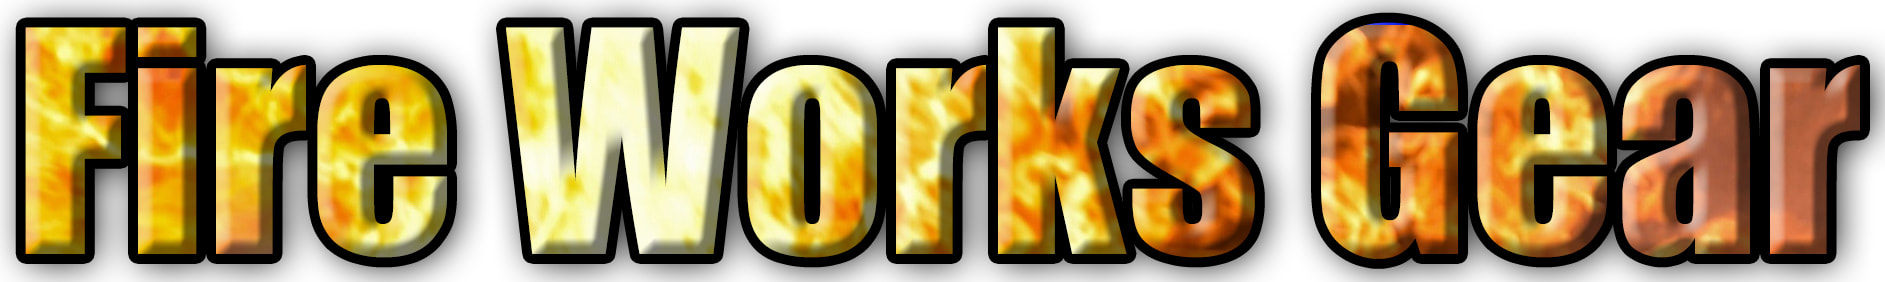 Fire Works Gear Logo